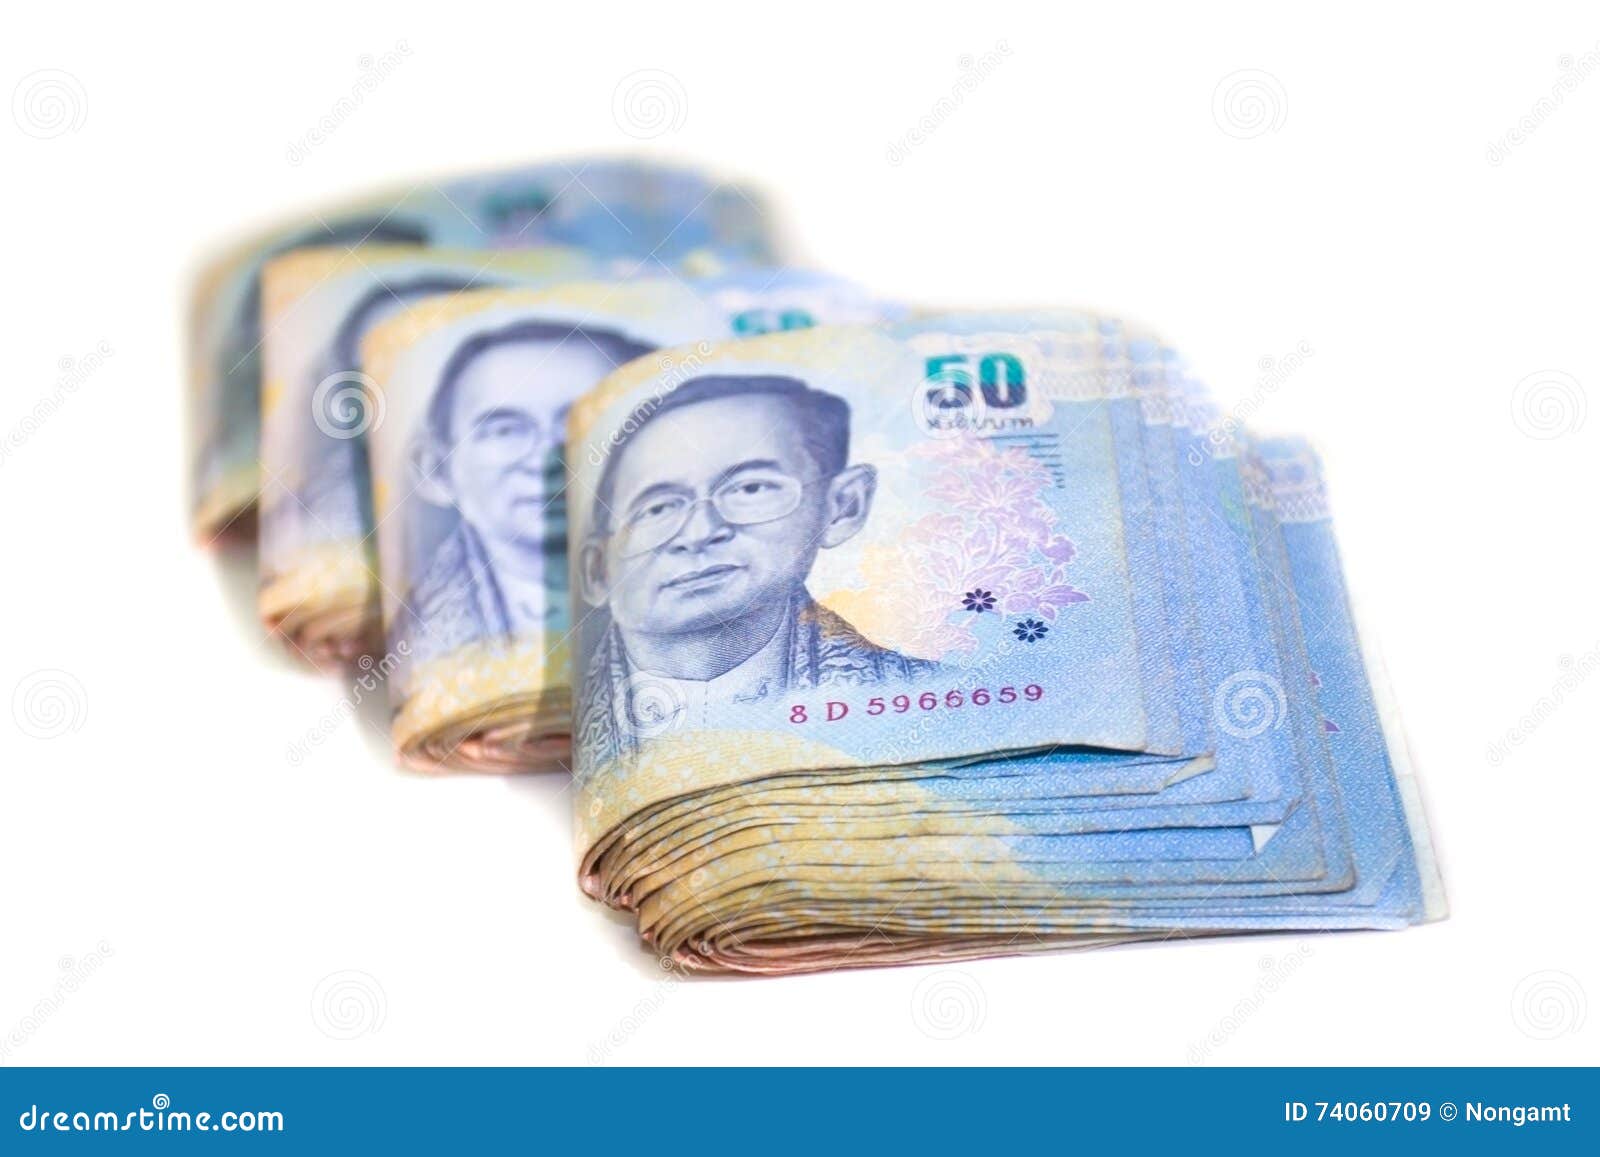 泰铢钞票 库存照片. 图片 包括有 背包, 经济, 概念性, 美元, 横幅提供资金的, 方向, 货币, 领导 - 50094774